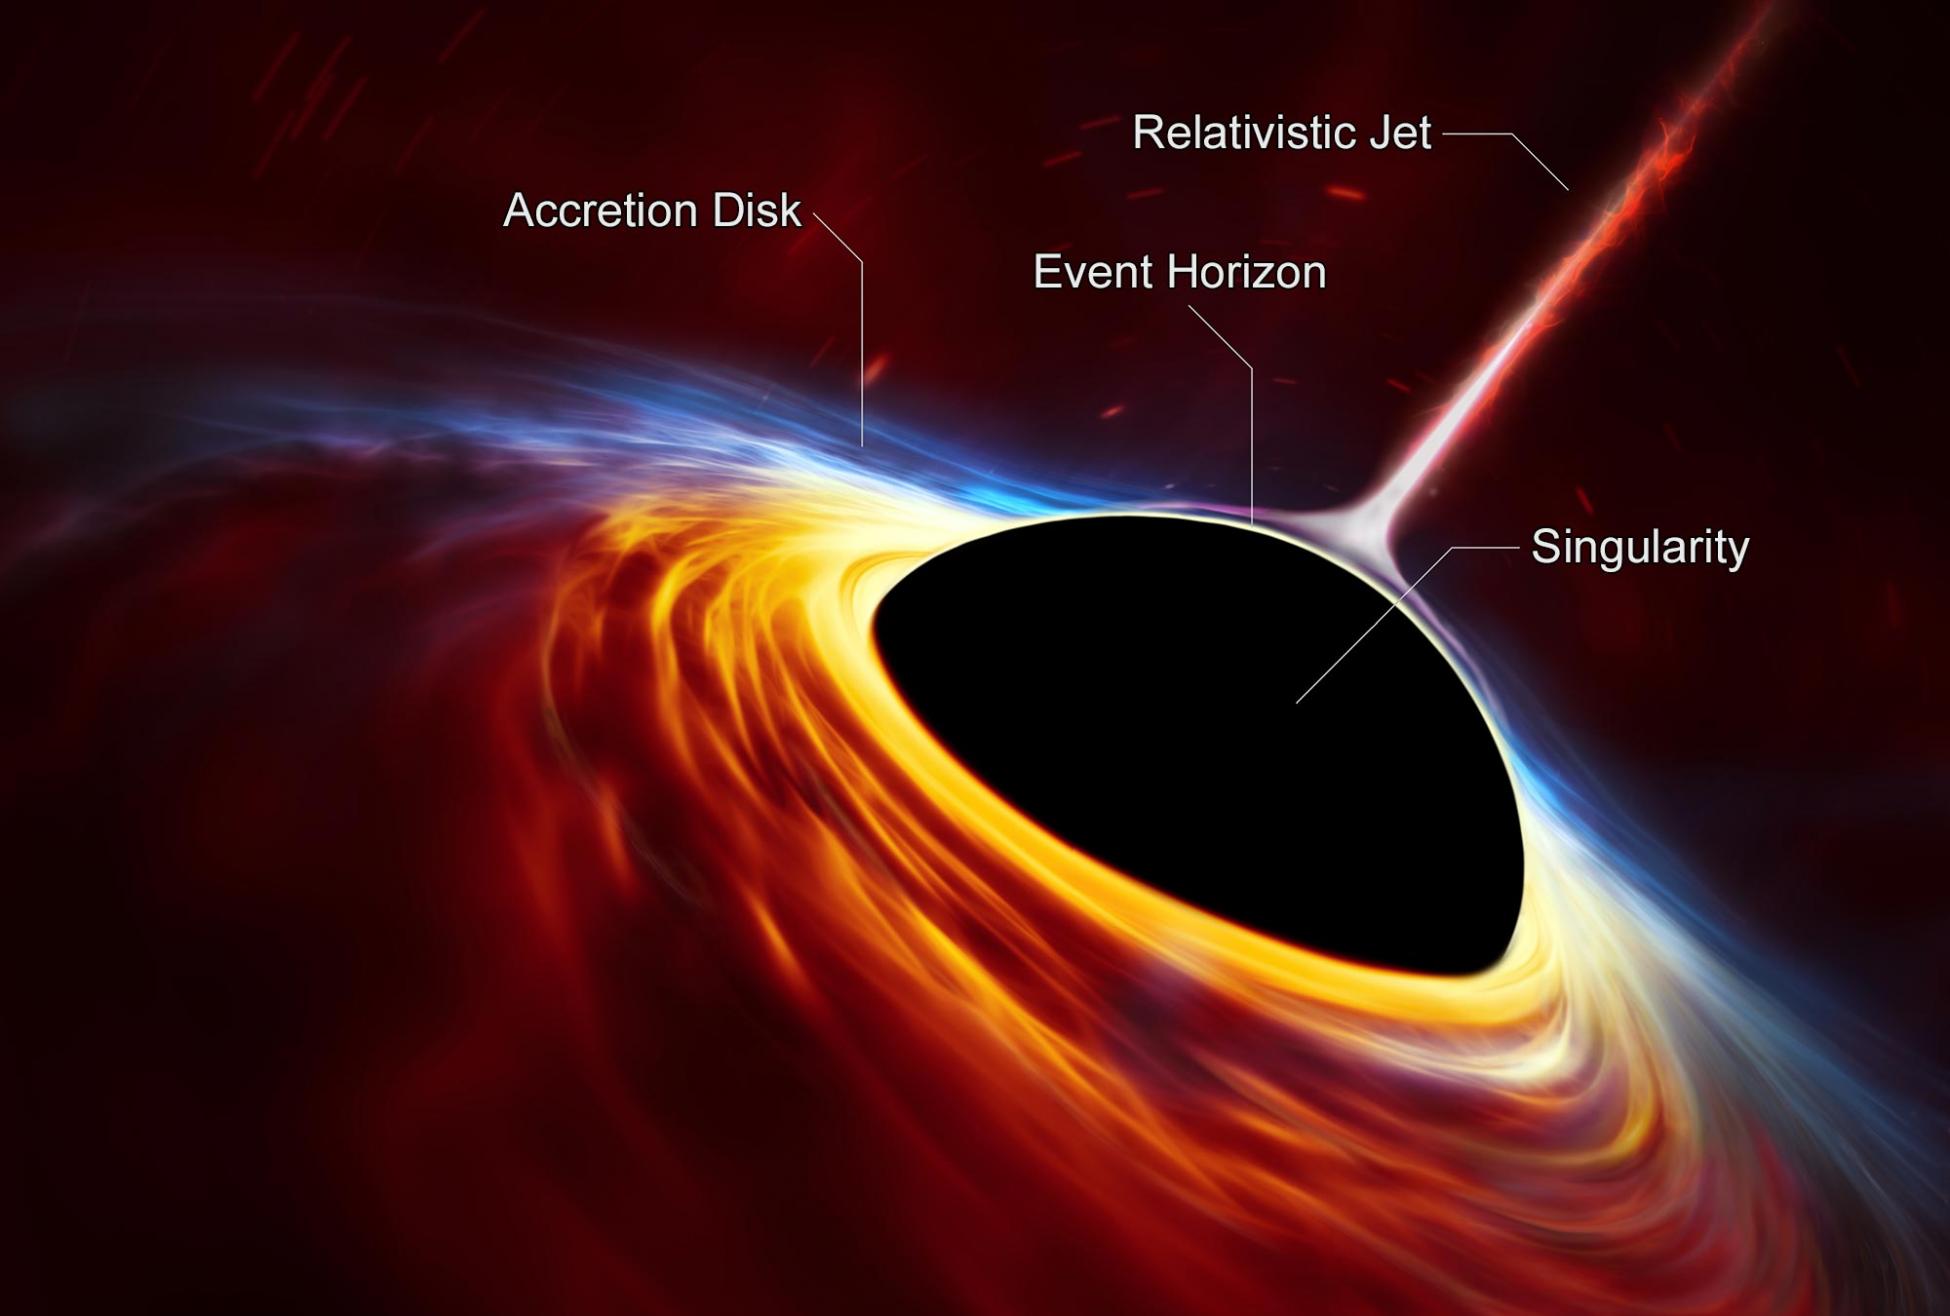 不是所有的理论都能解释M87星系中心超大质量黑洞